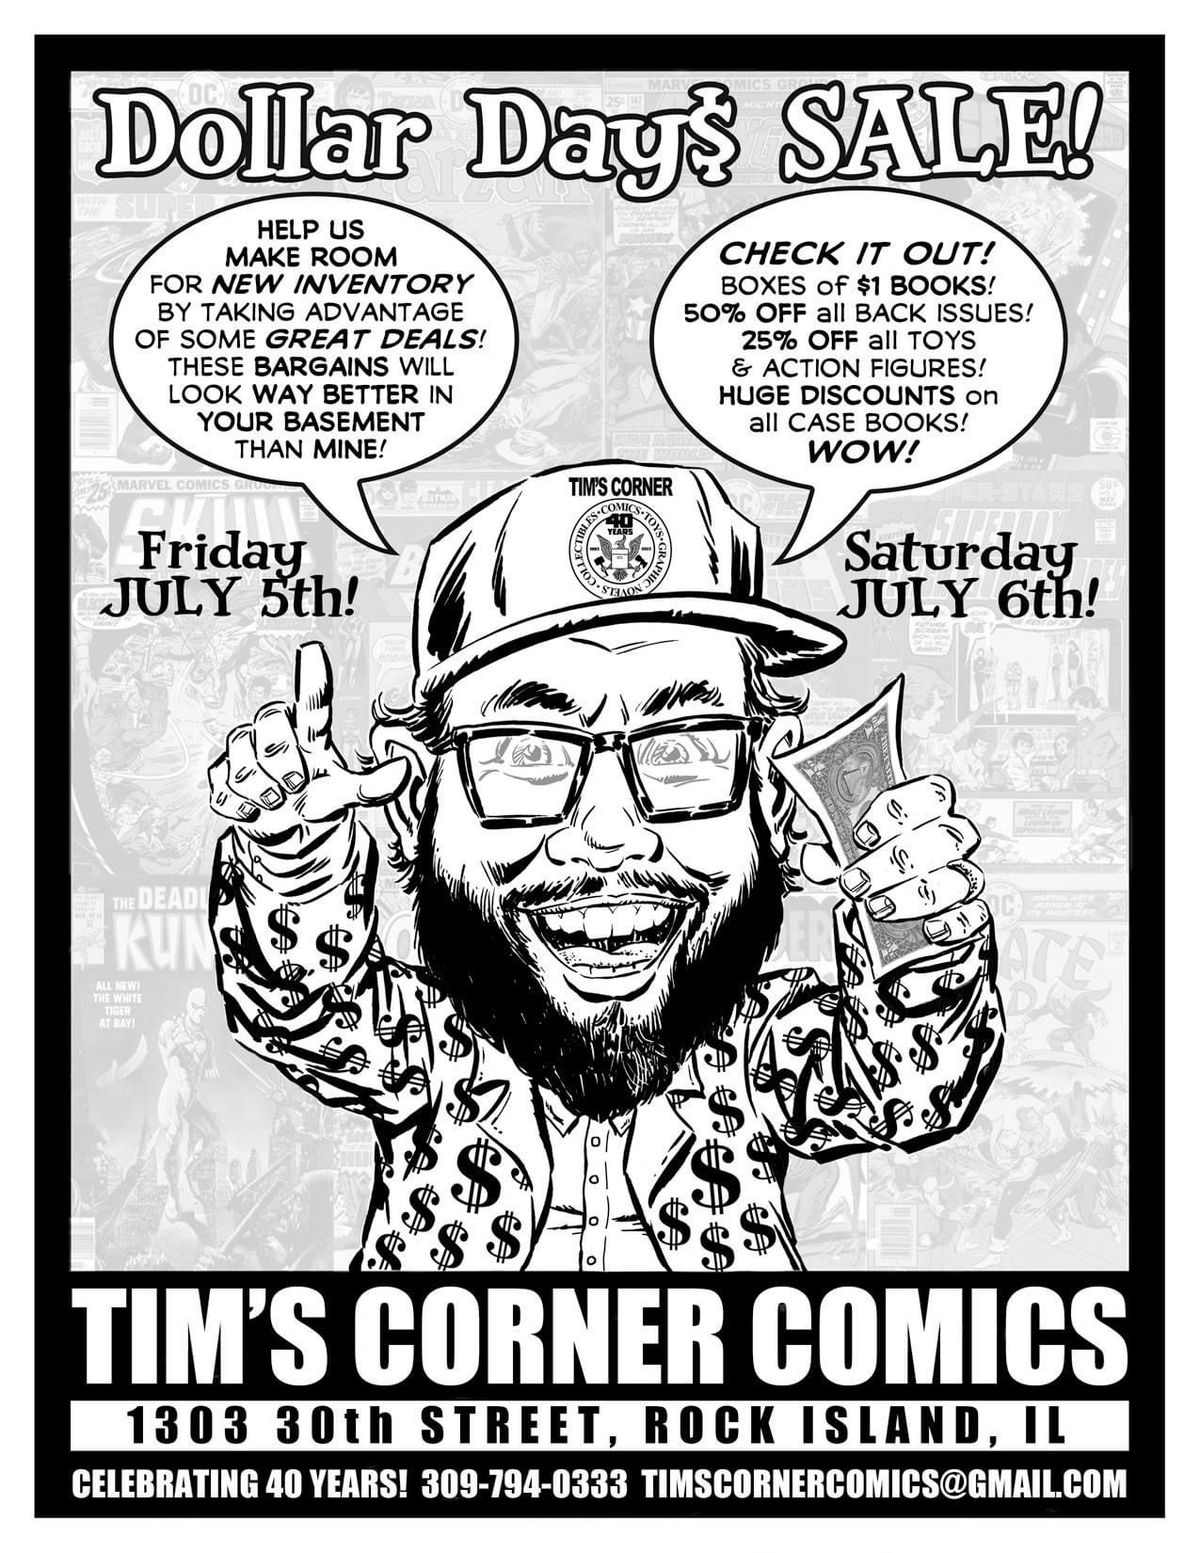 Tim\u2019s Corner Comics DOLLAR DAY$ SALE